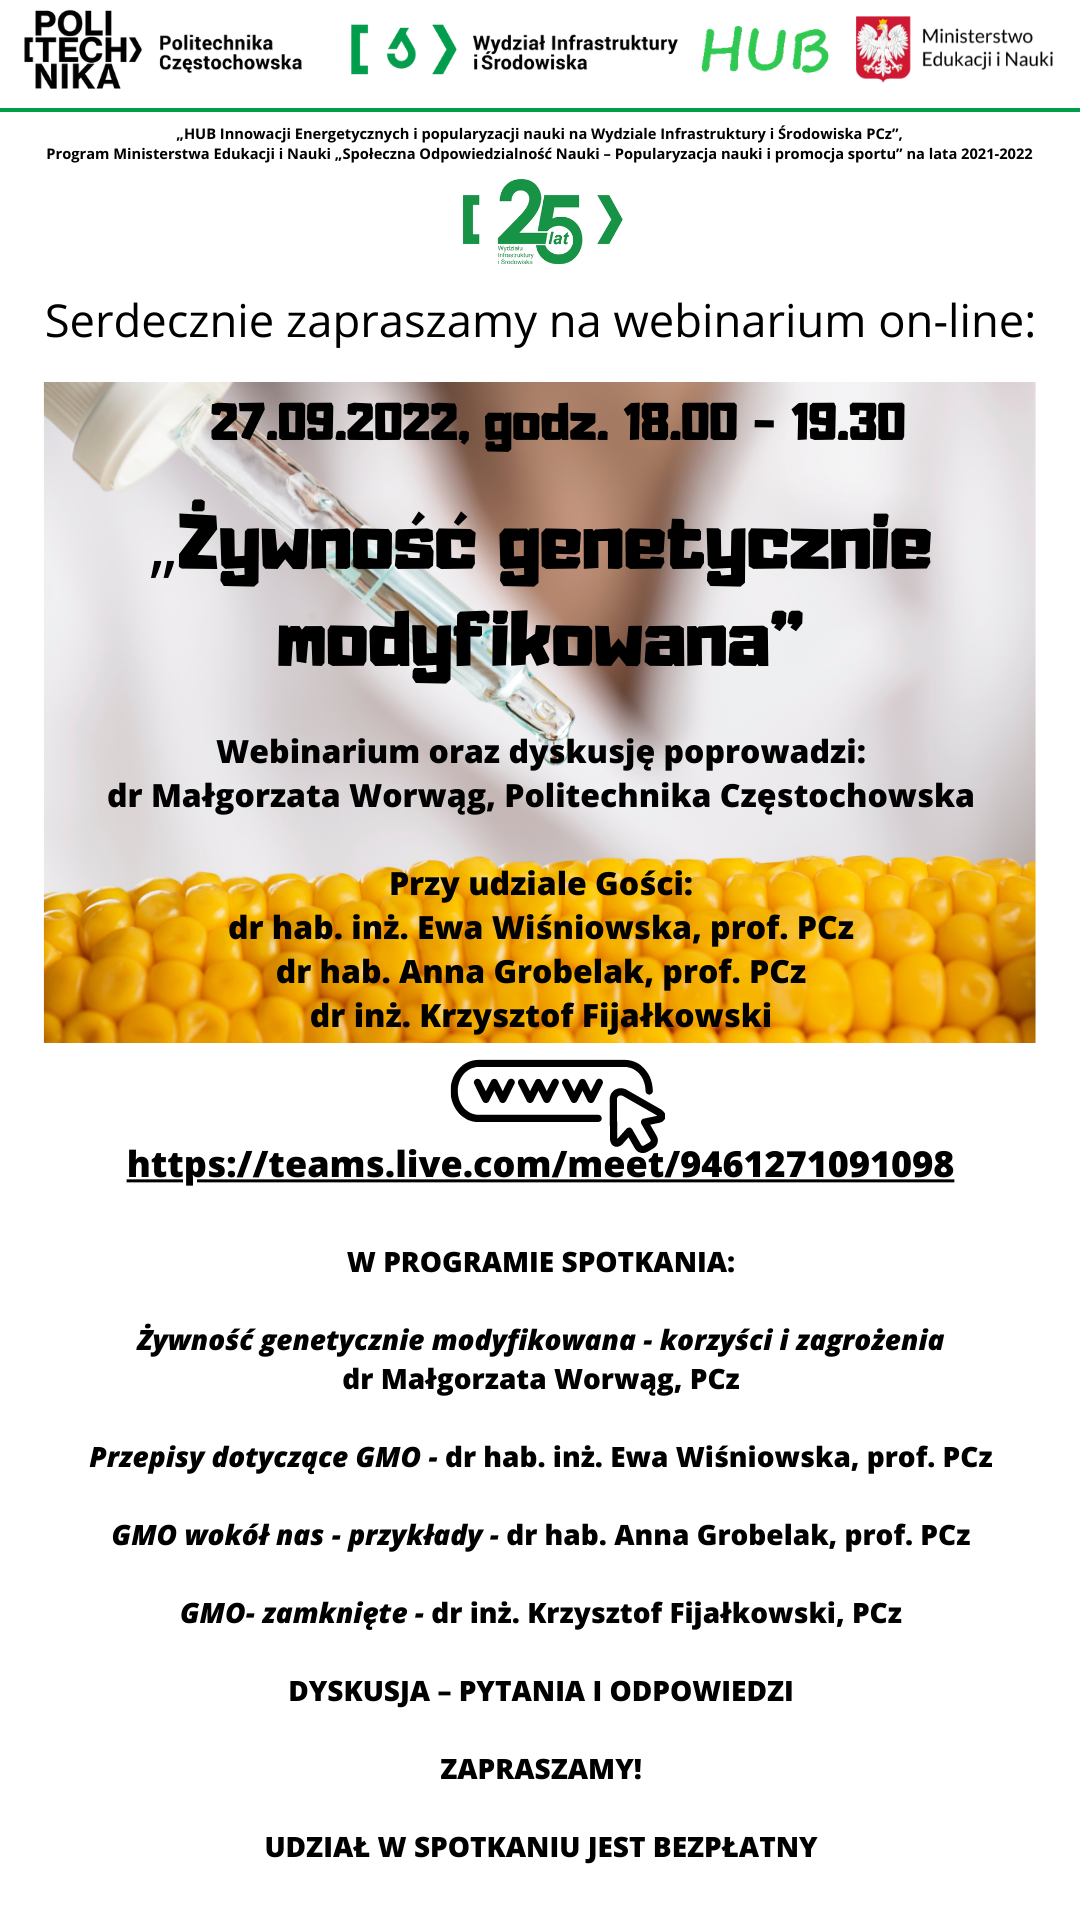 Zapraszamy na webinarium on-line: „Żywność genetycznie modyfikowana” 27.09.2022, godz. 18.00 - 19.30